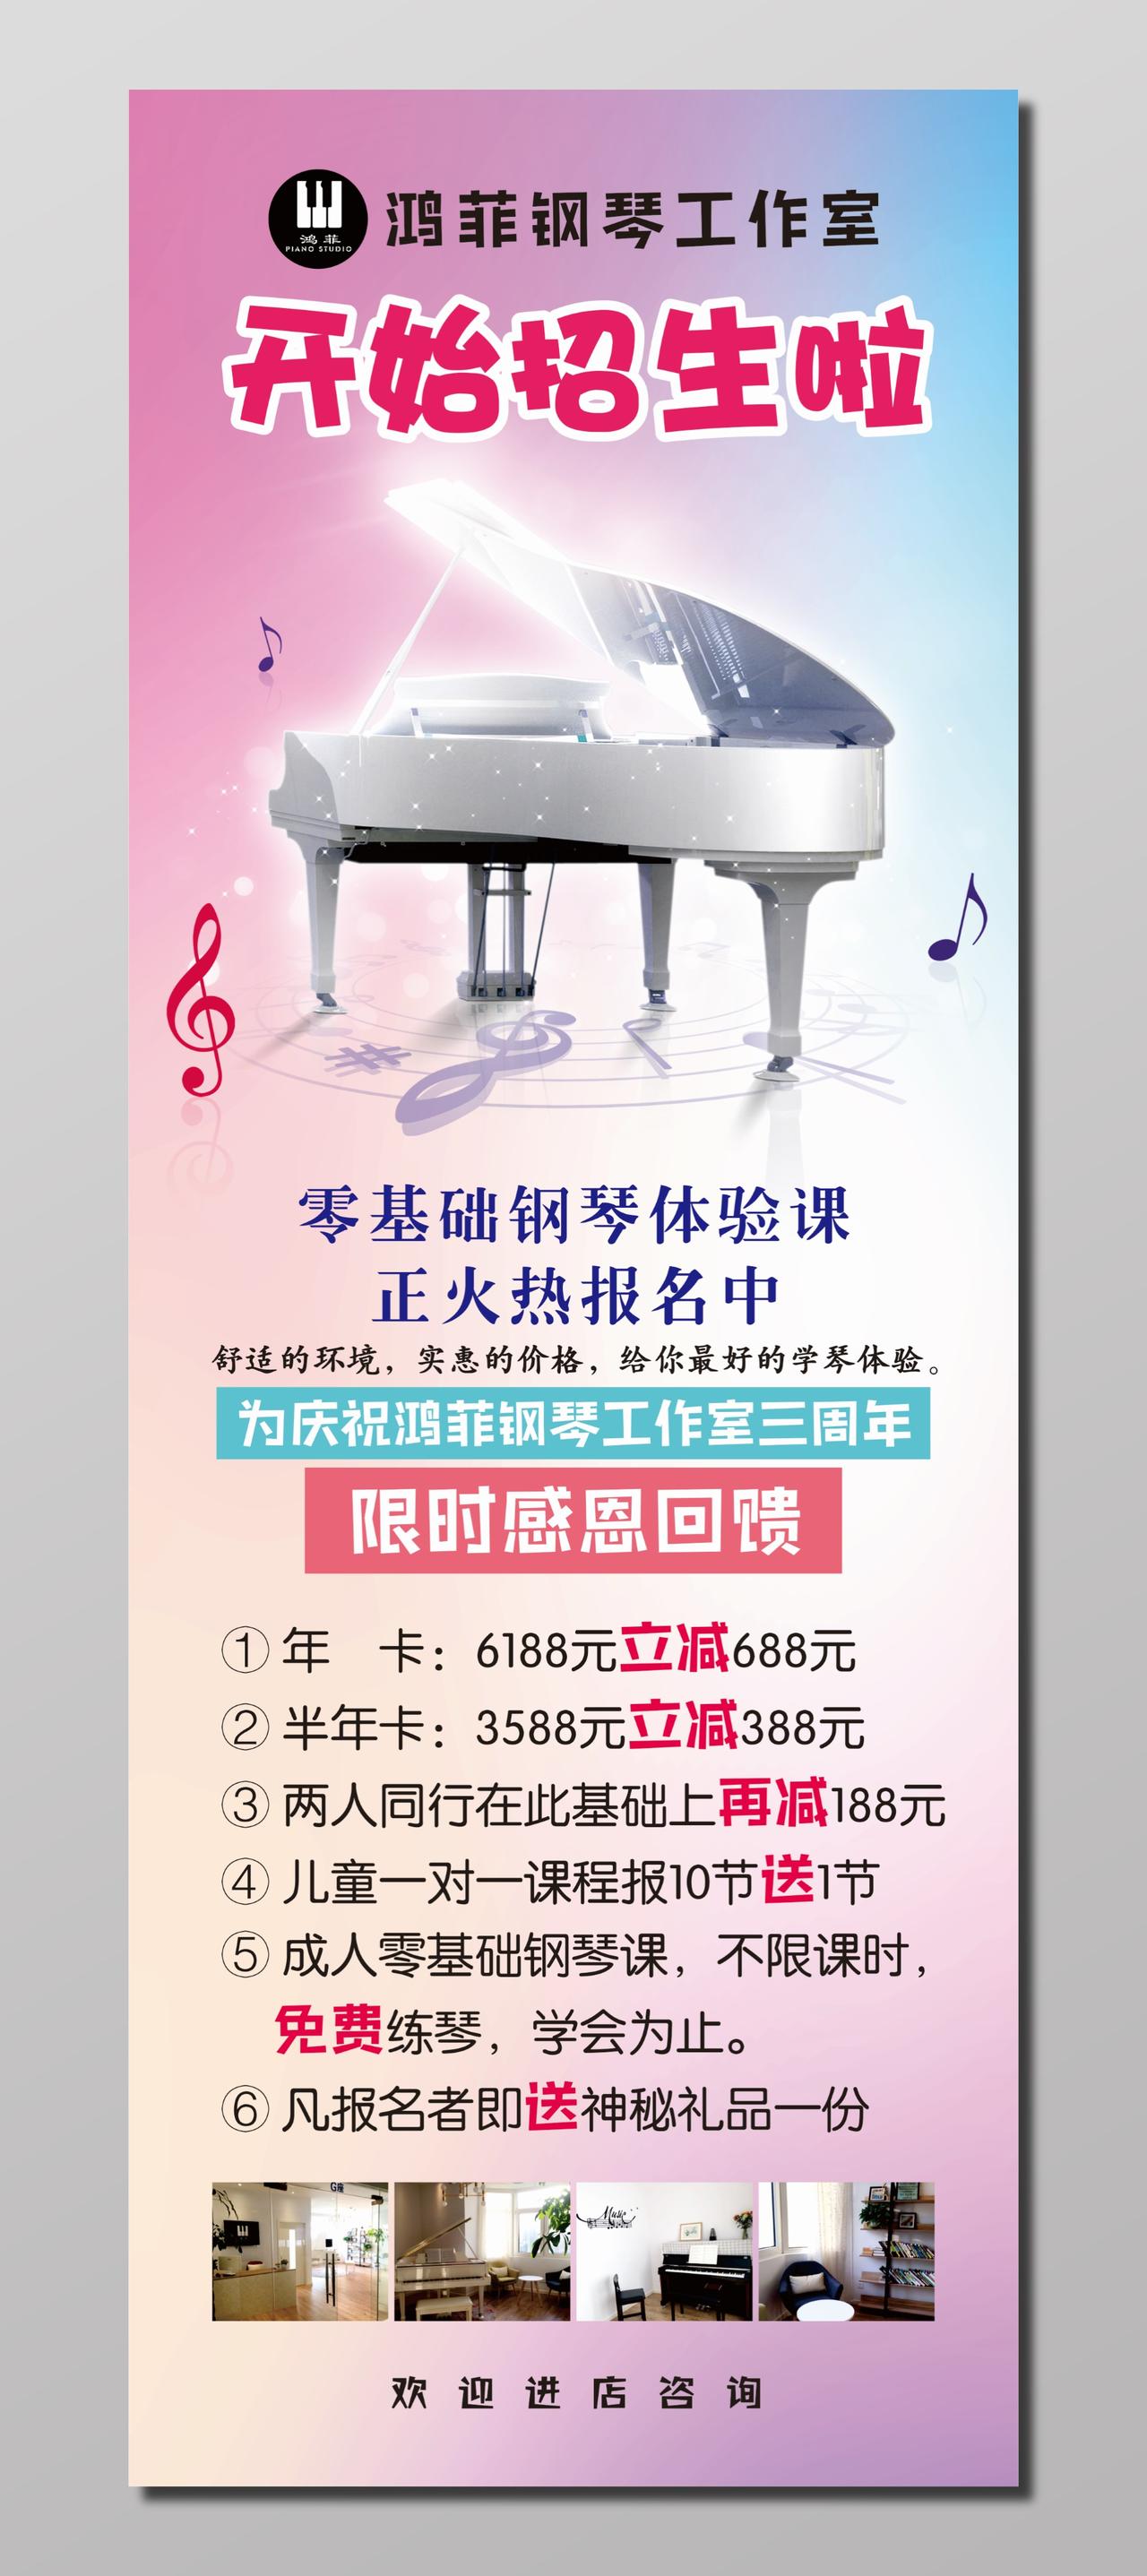 钢琴工作室招生活动海报